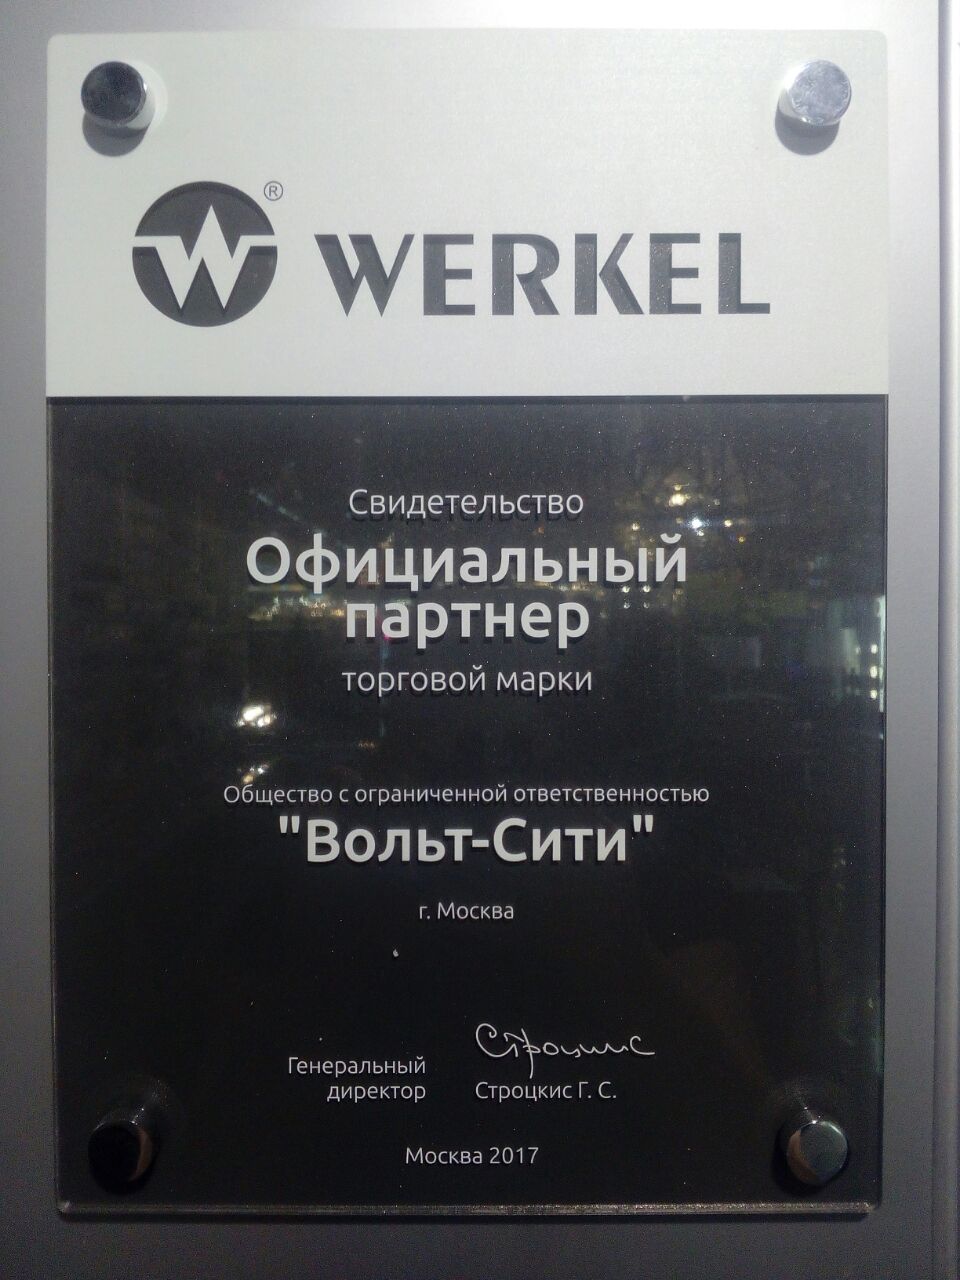 Компания Вольт-сити является официальным партнером компании Werke